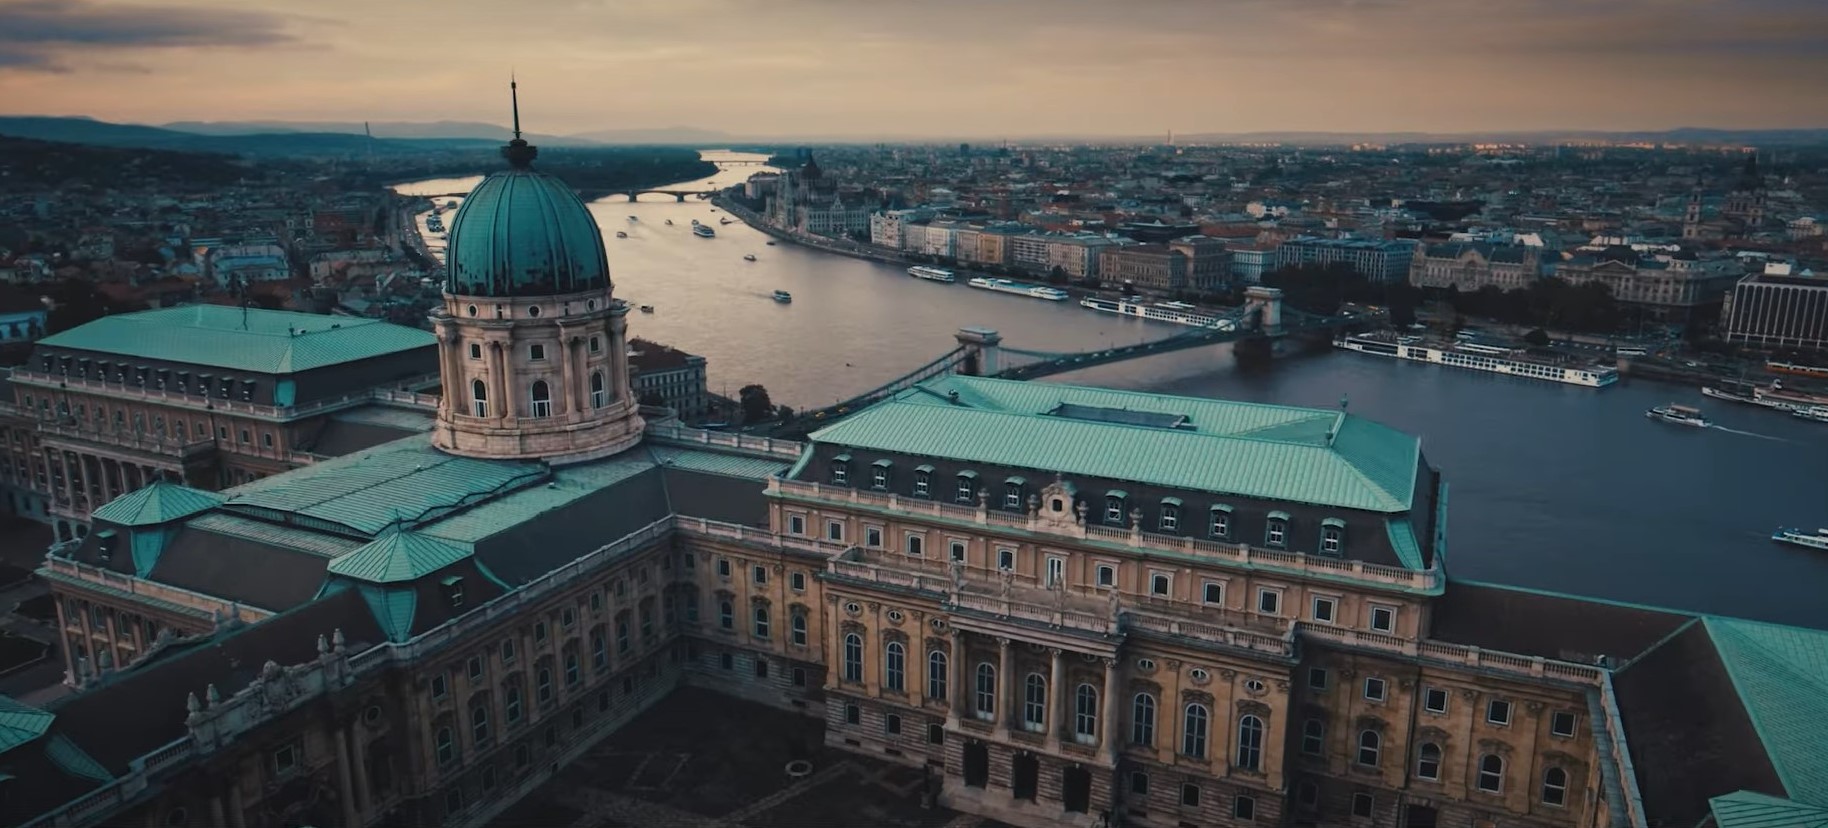 Spice of Europe-Budapest film de 365 de imagini